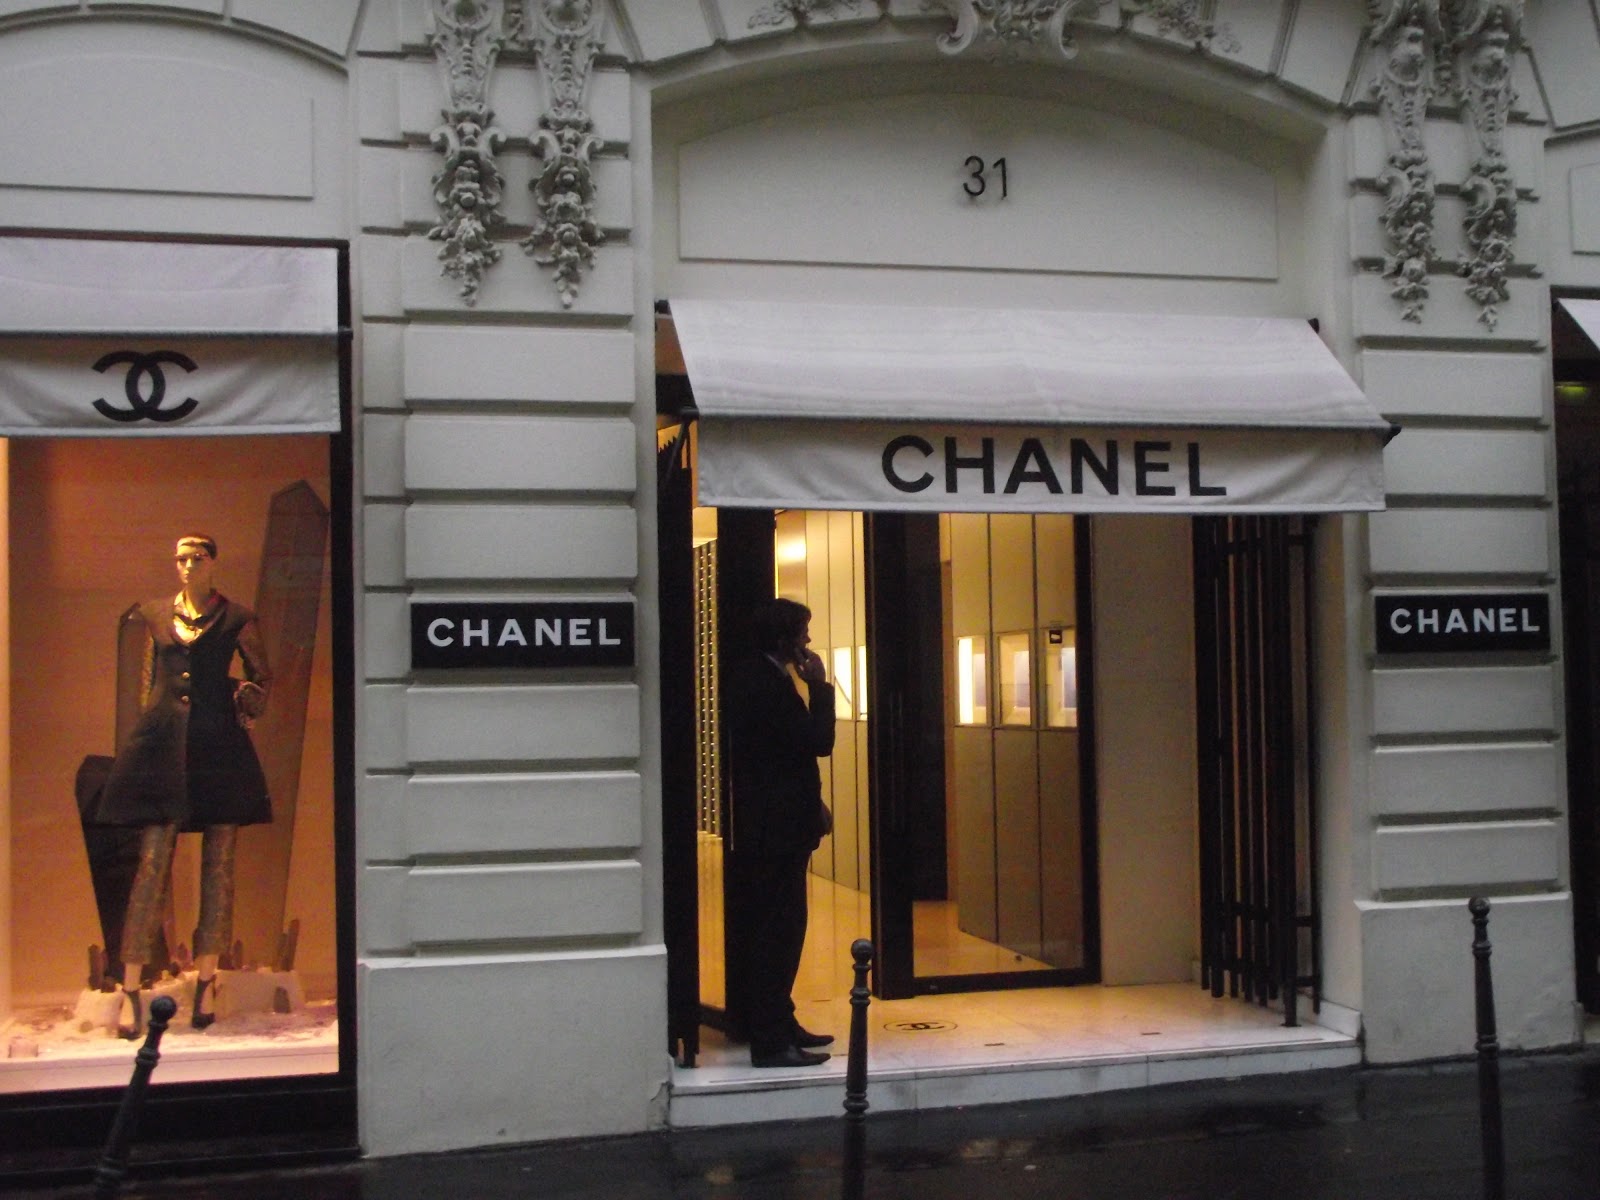 Club Fashionista: The Original Chanel Store: Rue Cambon 31, Paris